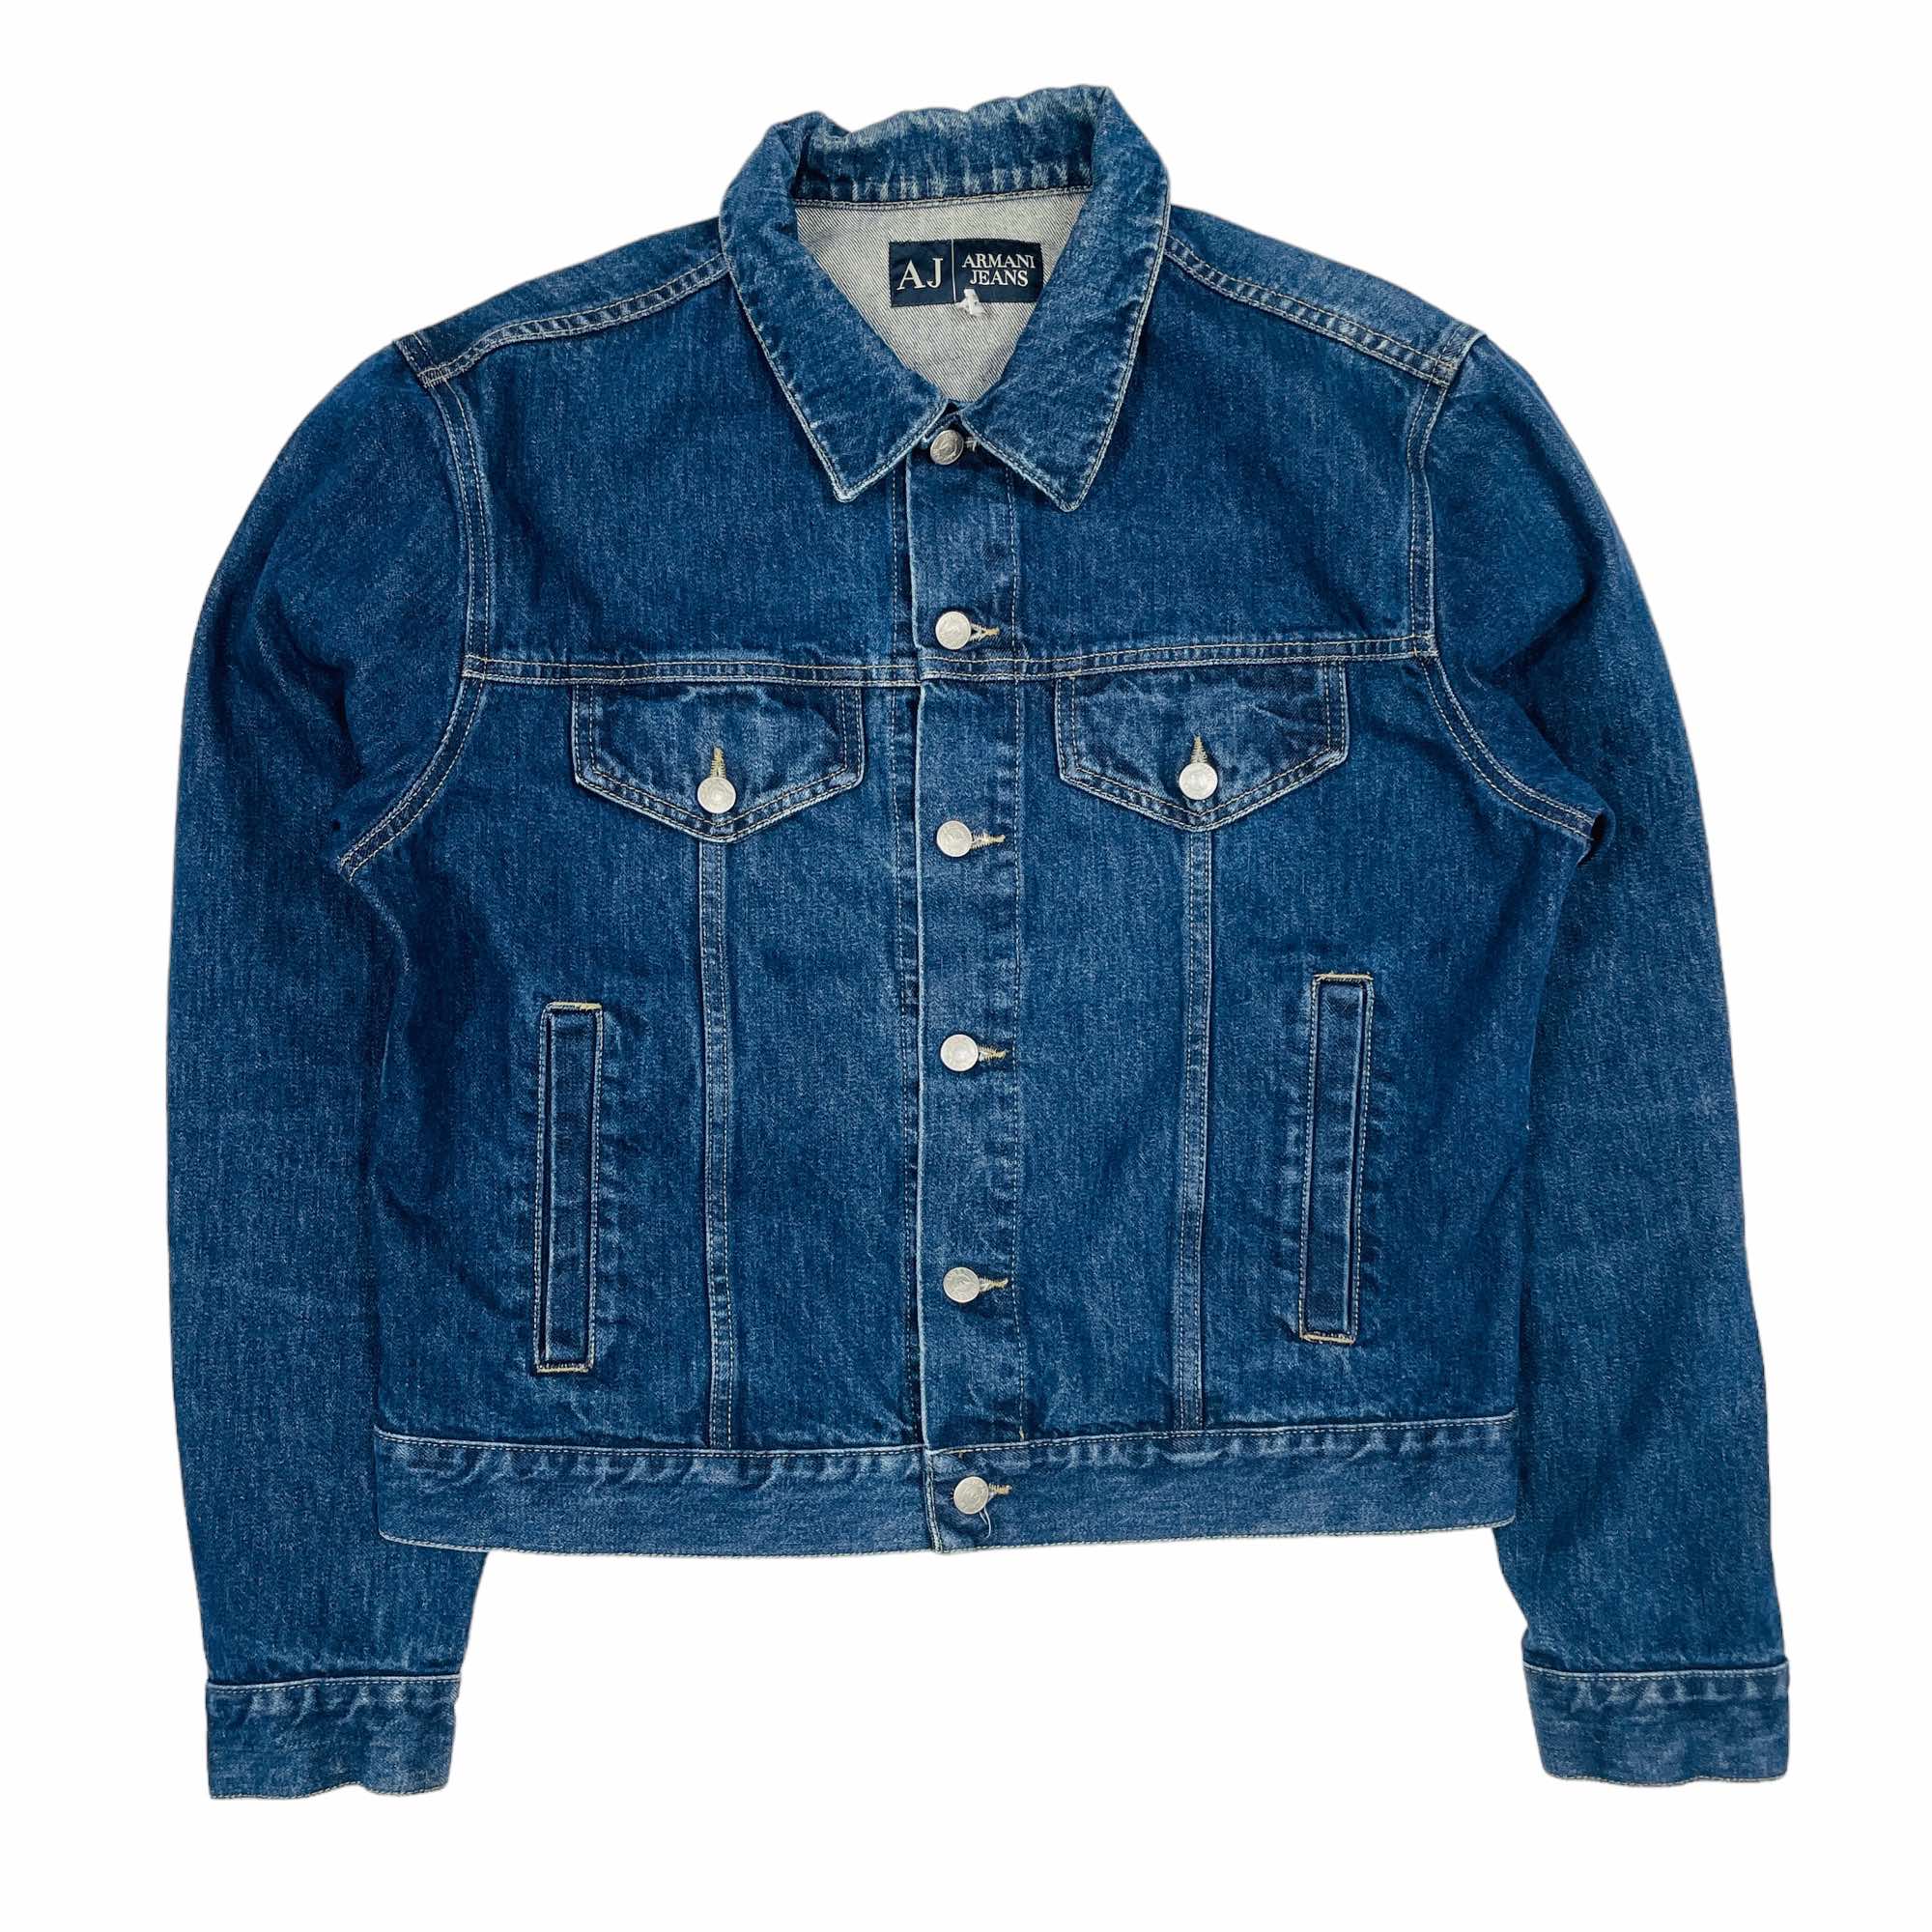 Armani Jeans Denim Jacket - Medium